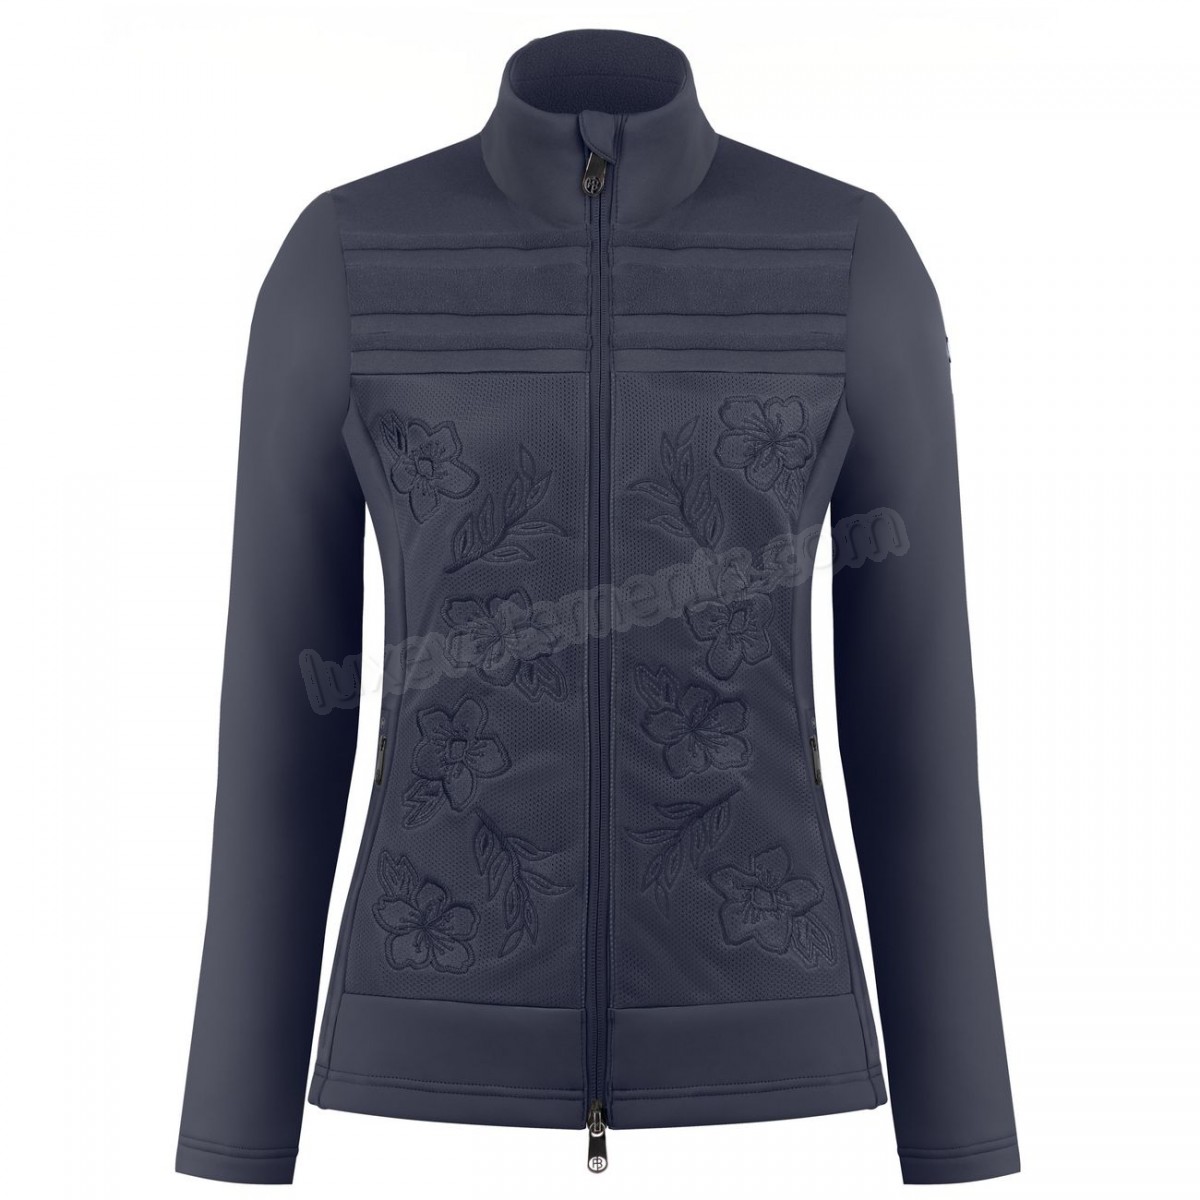 Poivre Blanc-Sports d'hiver femme POIVRE BLANC Veste Polaire Poivre Blanc Hybrid Stretch Fleece Jacket 1605 Gothic Blue 4 Femme Vente en ligne - -2